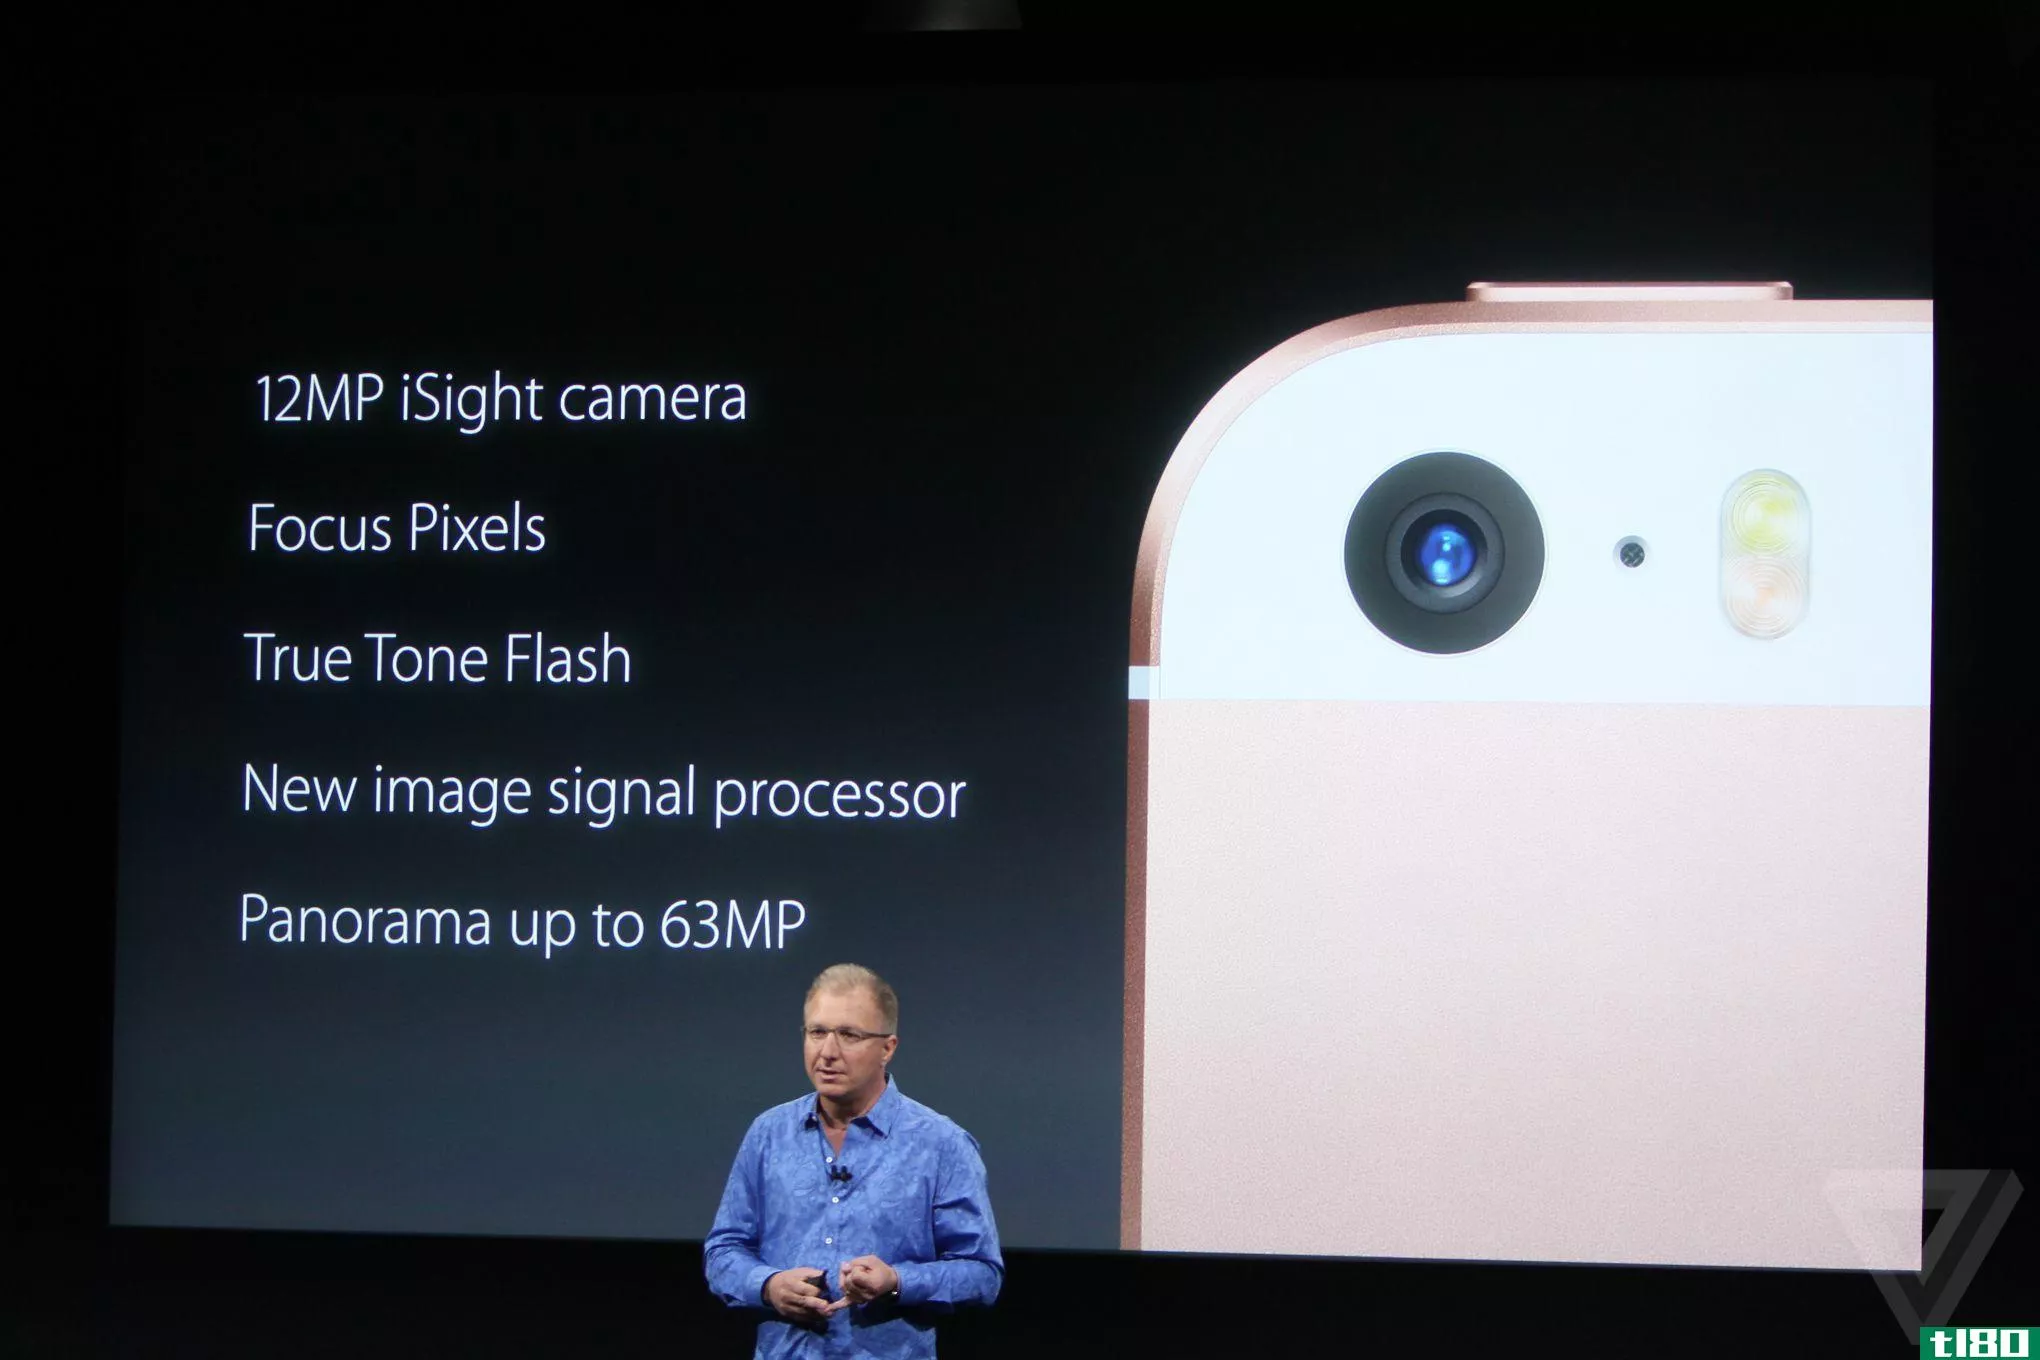 苹果新款iphone se的功能与iphone6s一样强大，并拥有相同的摄像头